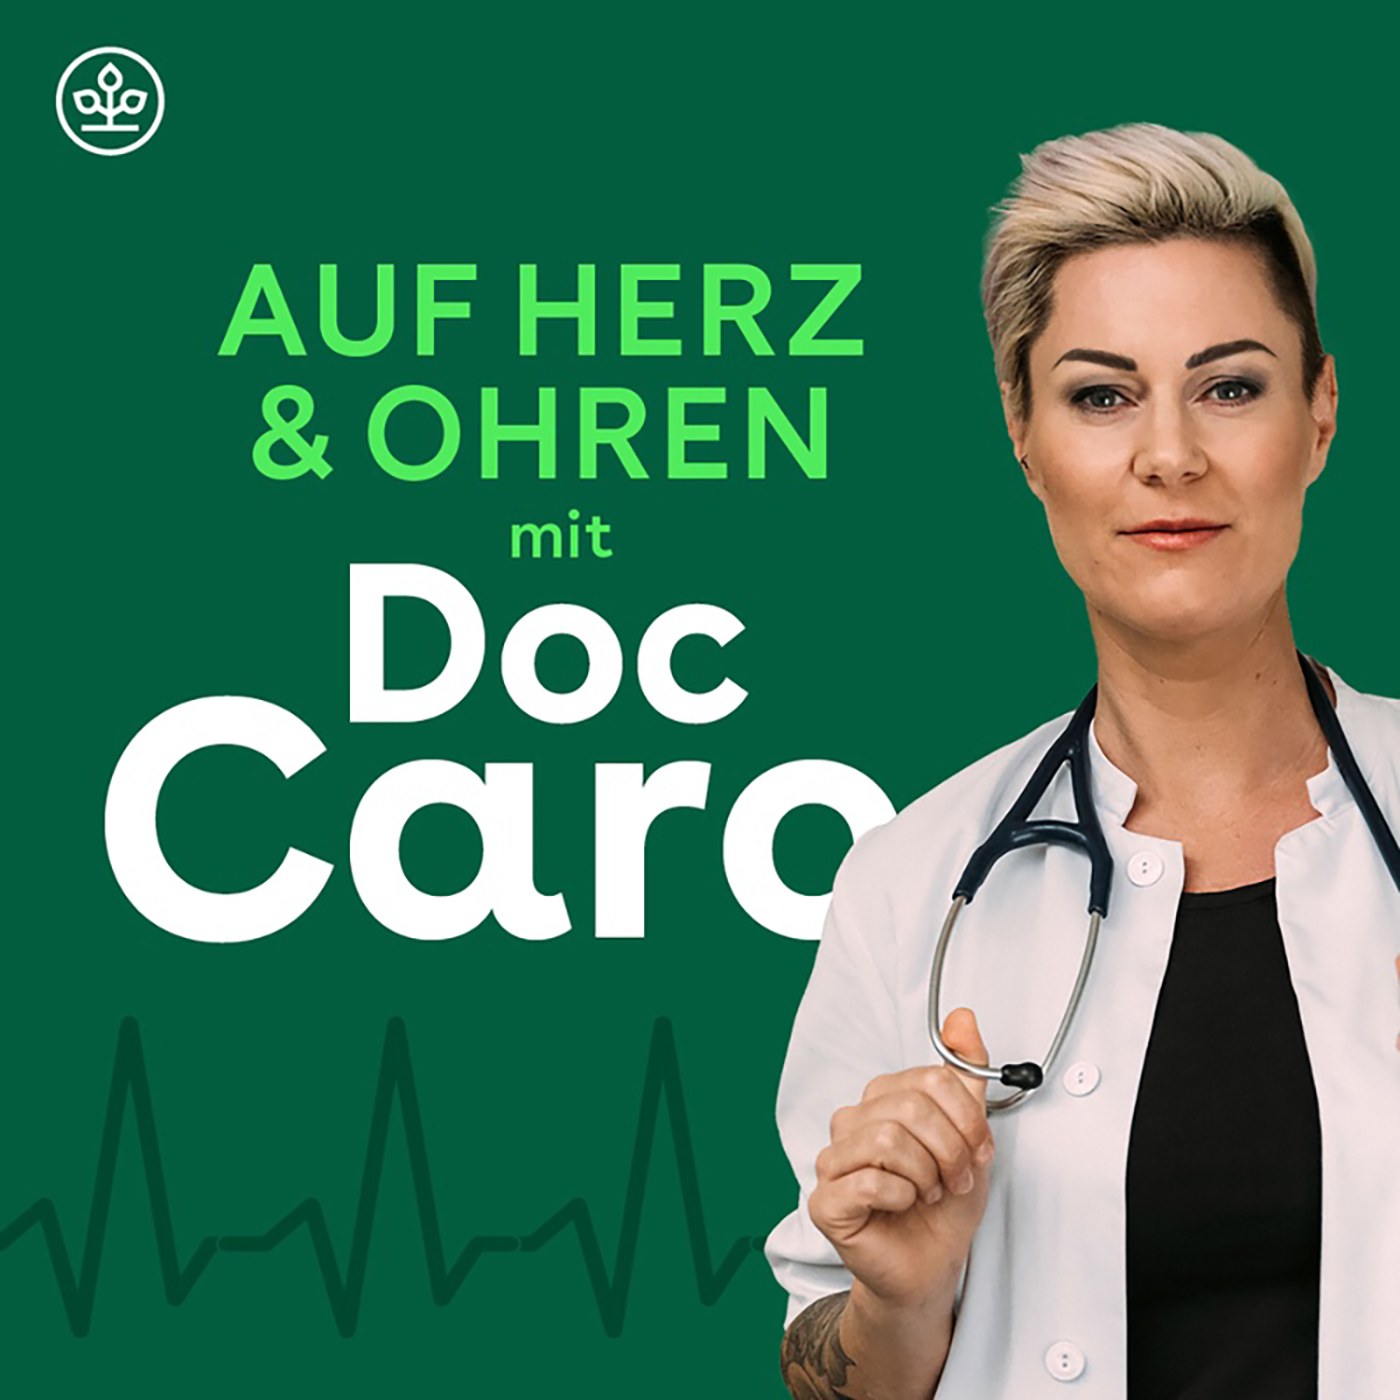 Auf Herz & Ohren mit Doc Caro – Wie leiste ich richtig Erste Hilfe?